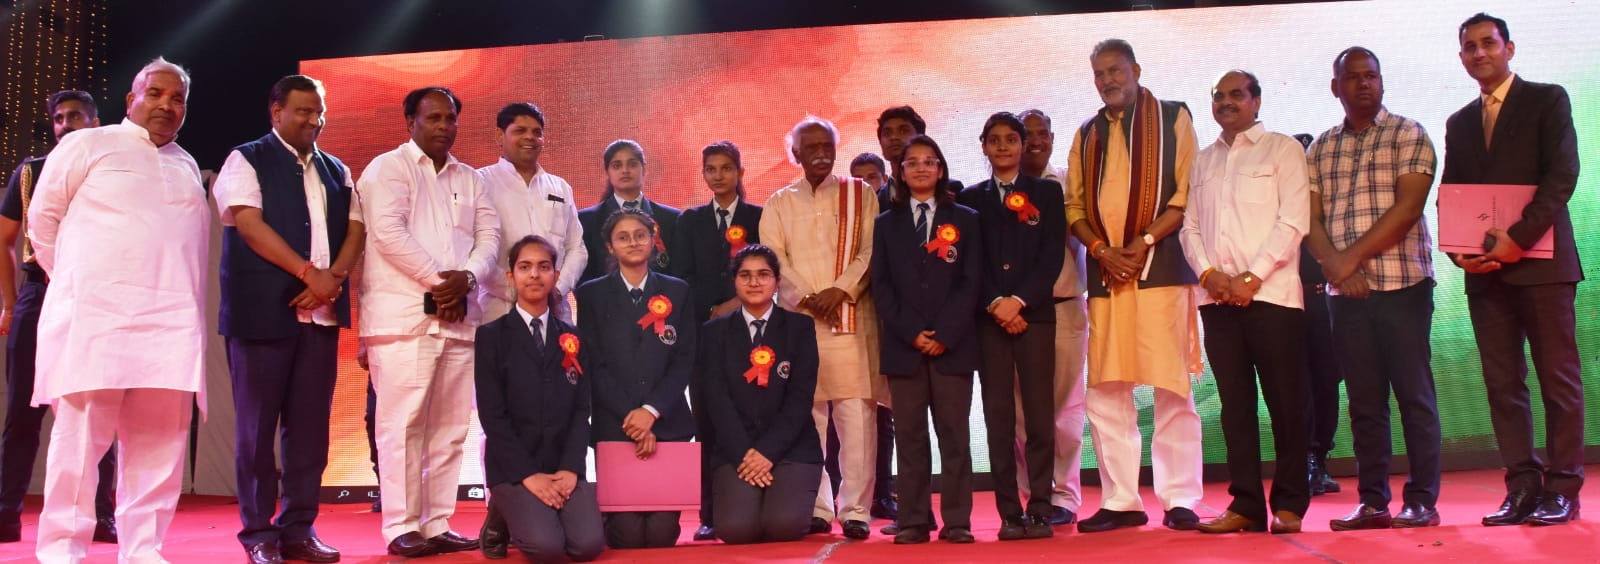 राज्यपाल श्री बंडारू दत्तात्रेय पलवल के एस.पी.एस इंटरनेशनल स्कूल के वार्षिक समारोह में छात्रों को सम्मानित करते हुए